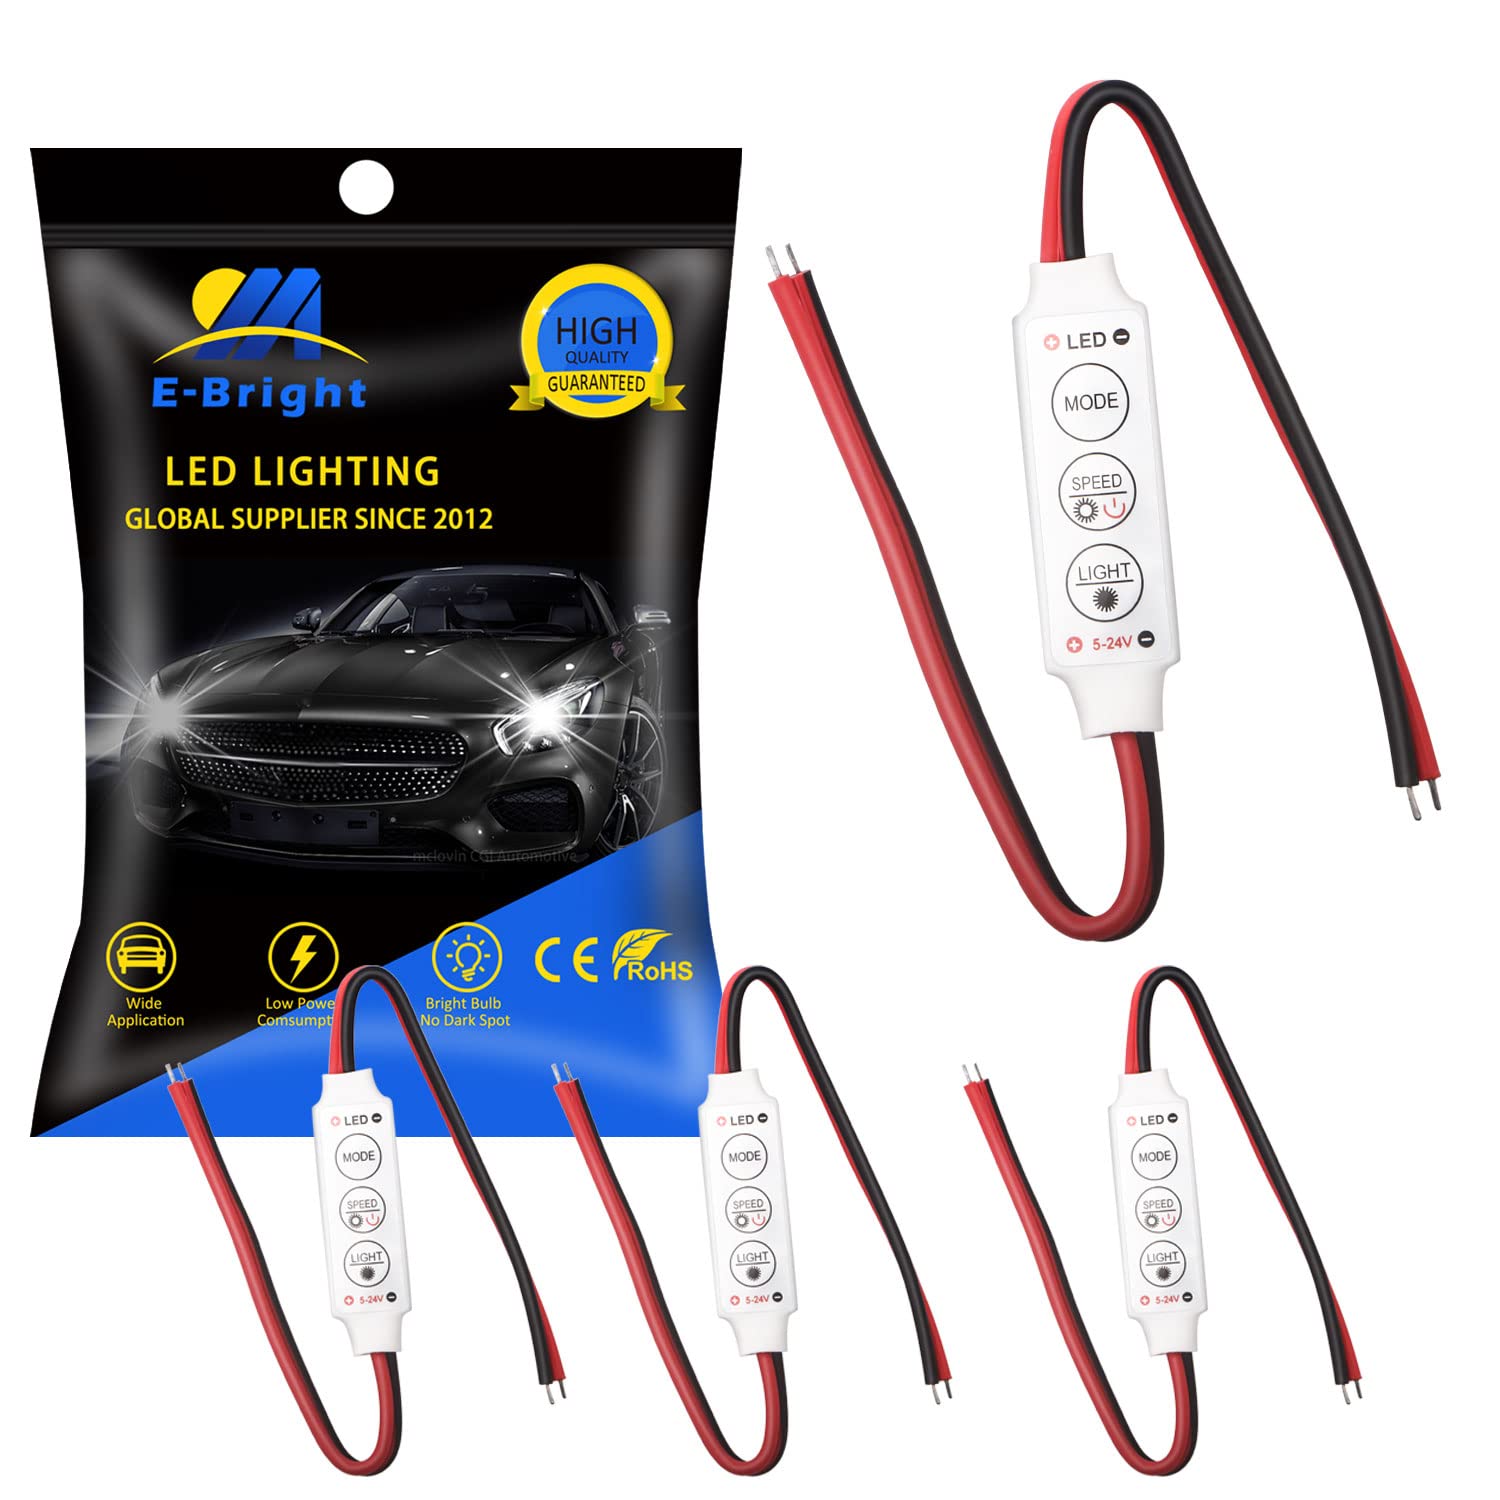 EverBright LED-Blinkmodul für Auto, Boot, Haushalt, LED-Streifen oder LED-Lampe, DC 12 V ~ 24 V, 4 Stück von YM E-Bright